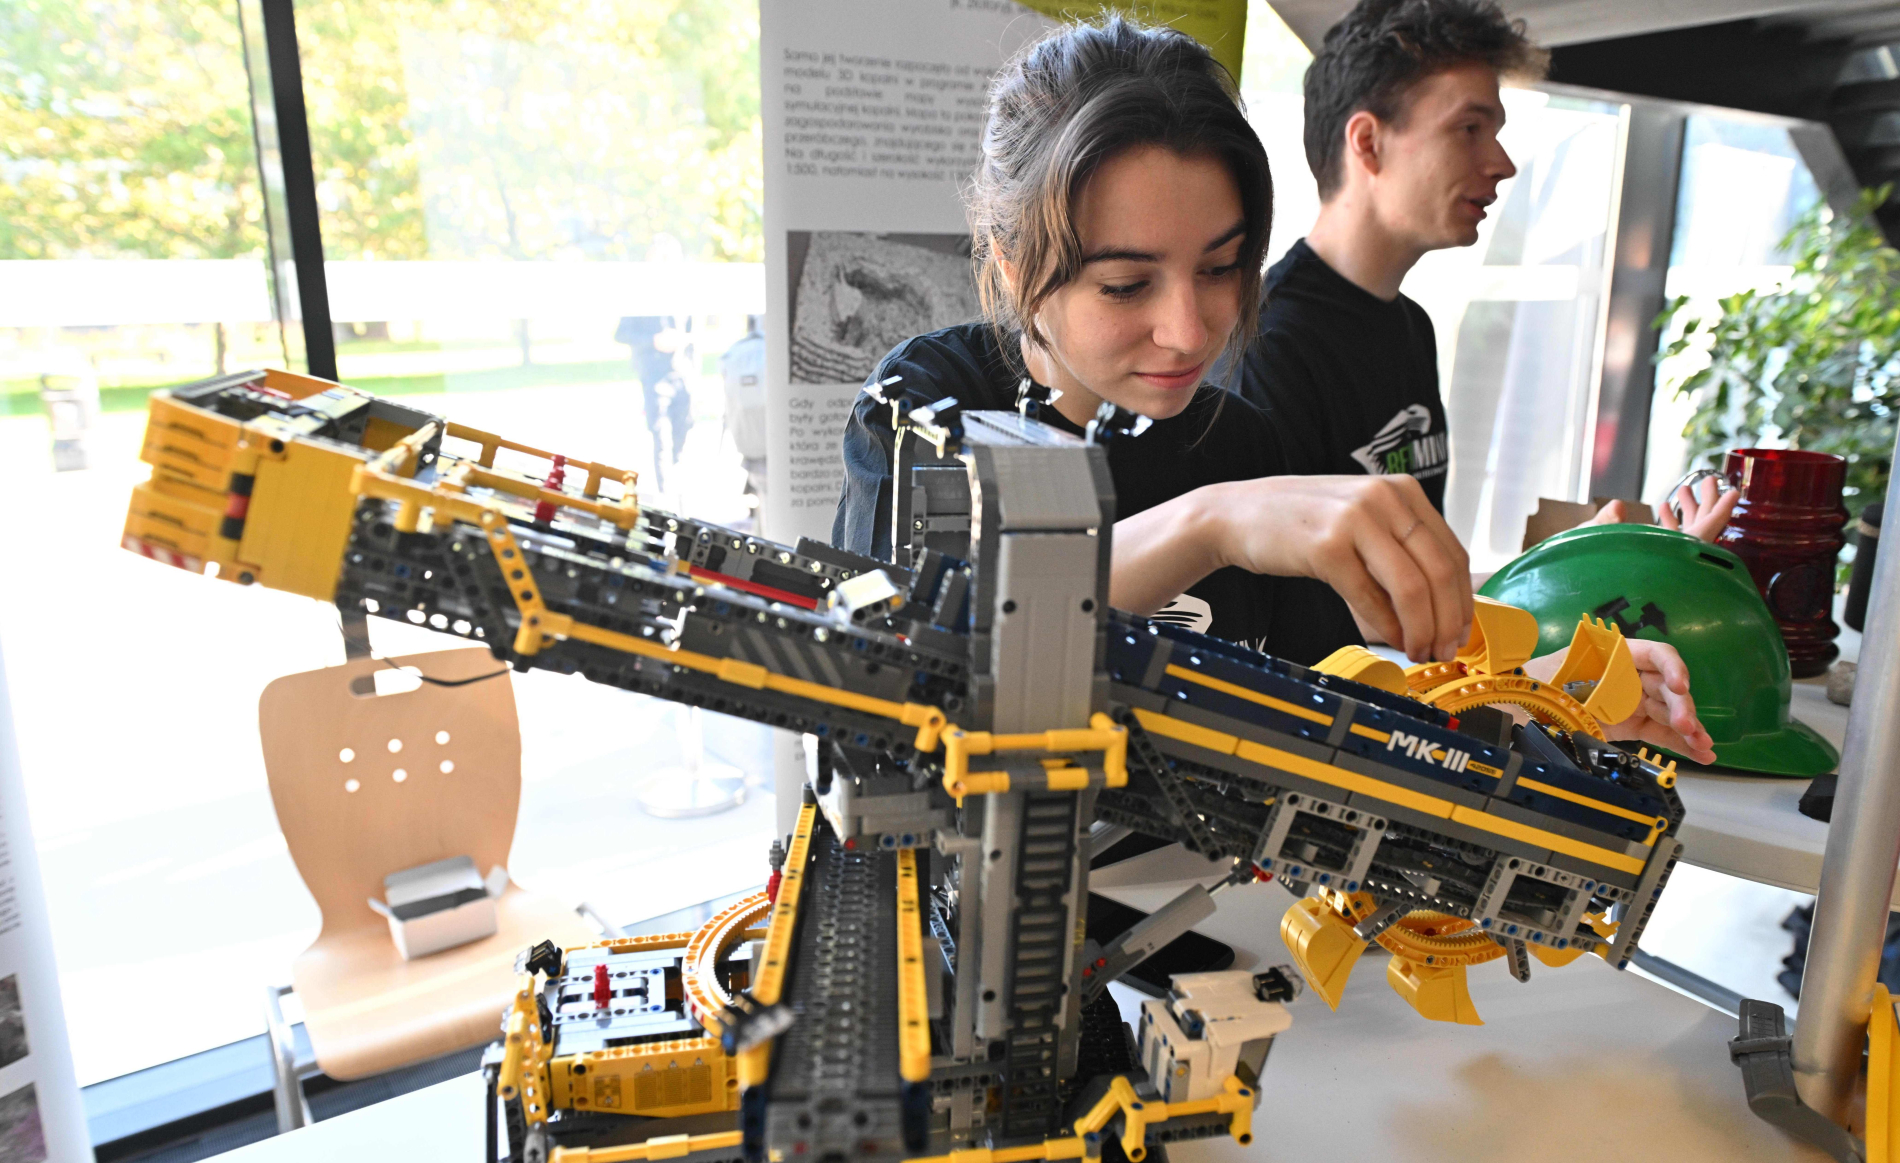 Zdjęcie ilustracyjne dziewczyny układającej konstrukcję z LEGO